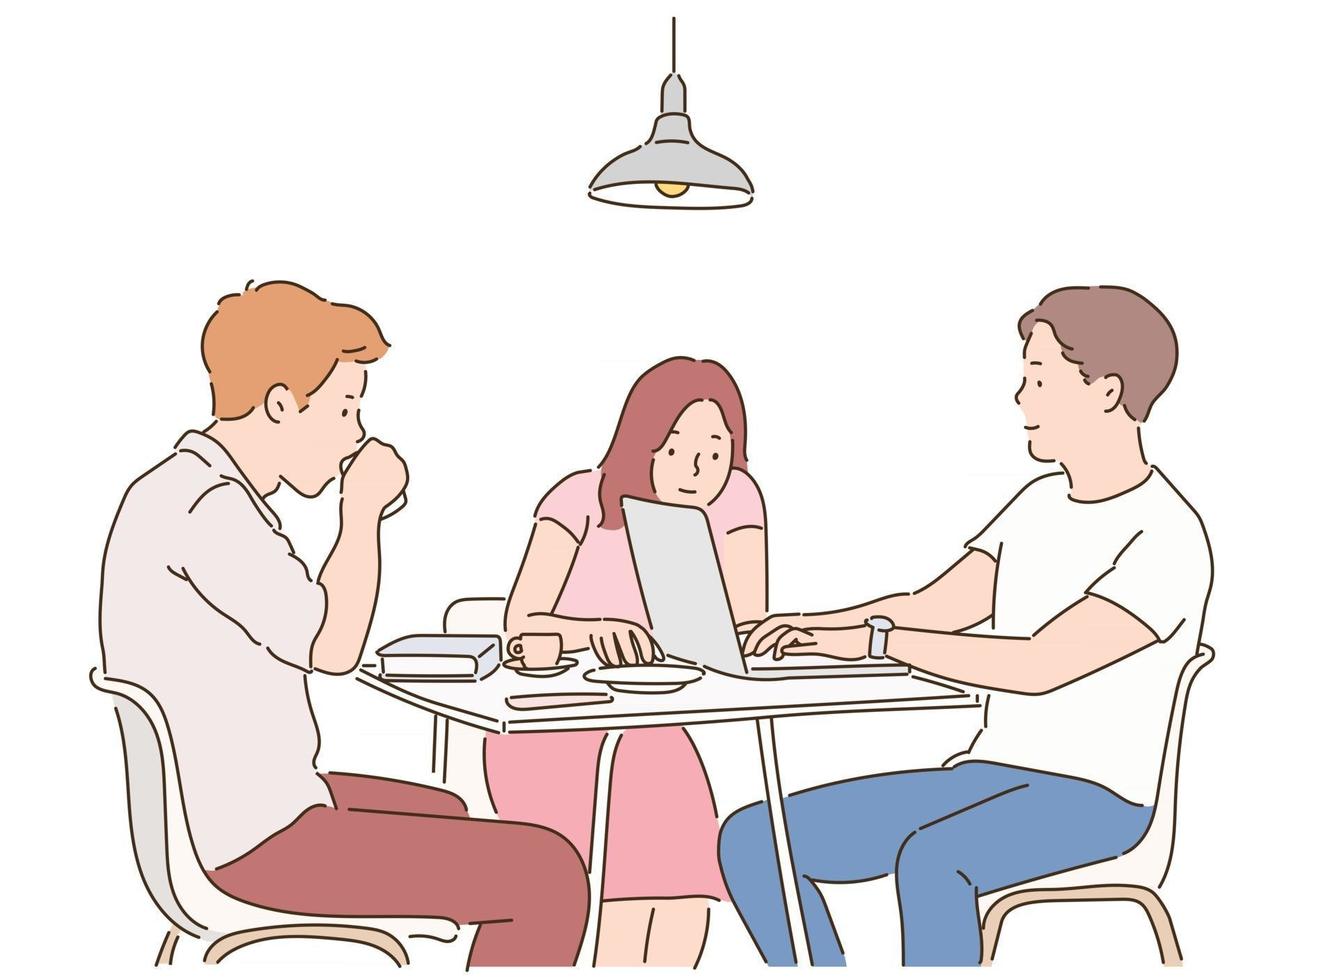 trois personnes sont assises autour d'une table et ont une réunion. illustrations de conception de vecteur de style dessinés à la main.